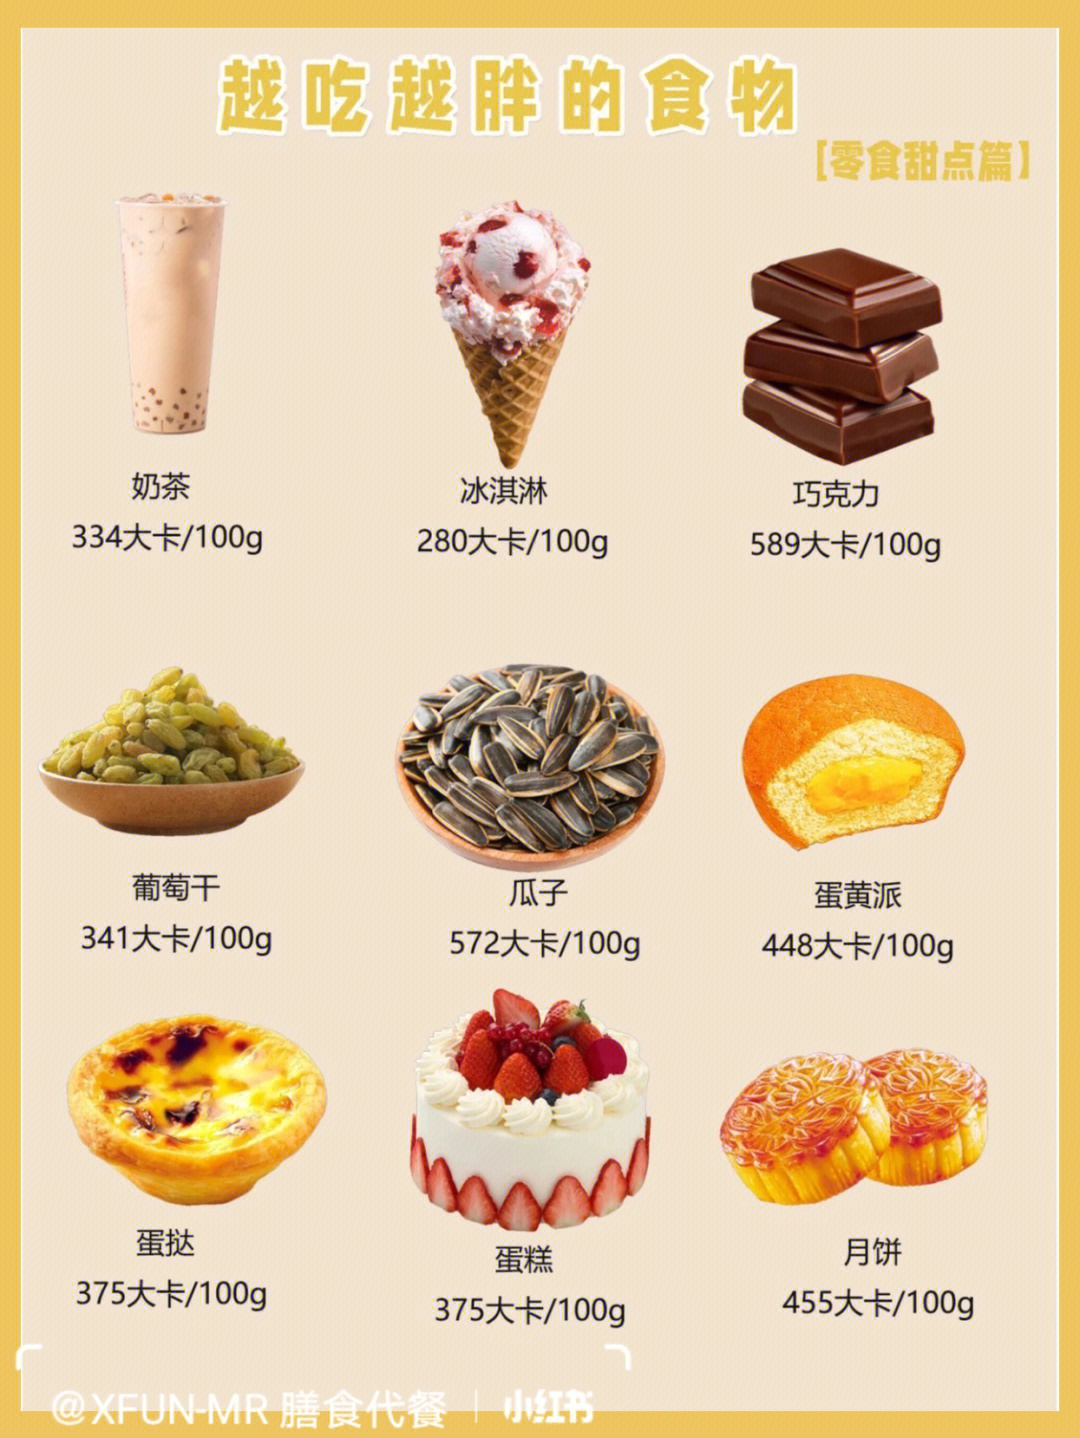 奶茶,冰淇淋,巧克力,葡萄干,瓜子,蛋黄派,蛋挞,蛋糕,月饼91糖油混合